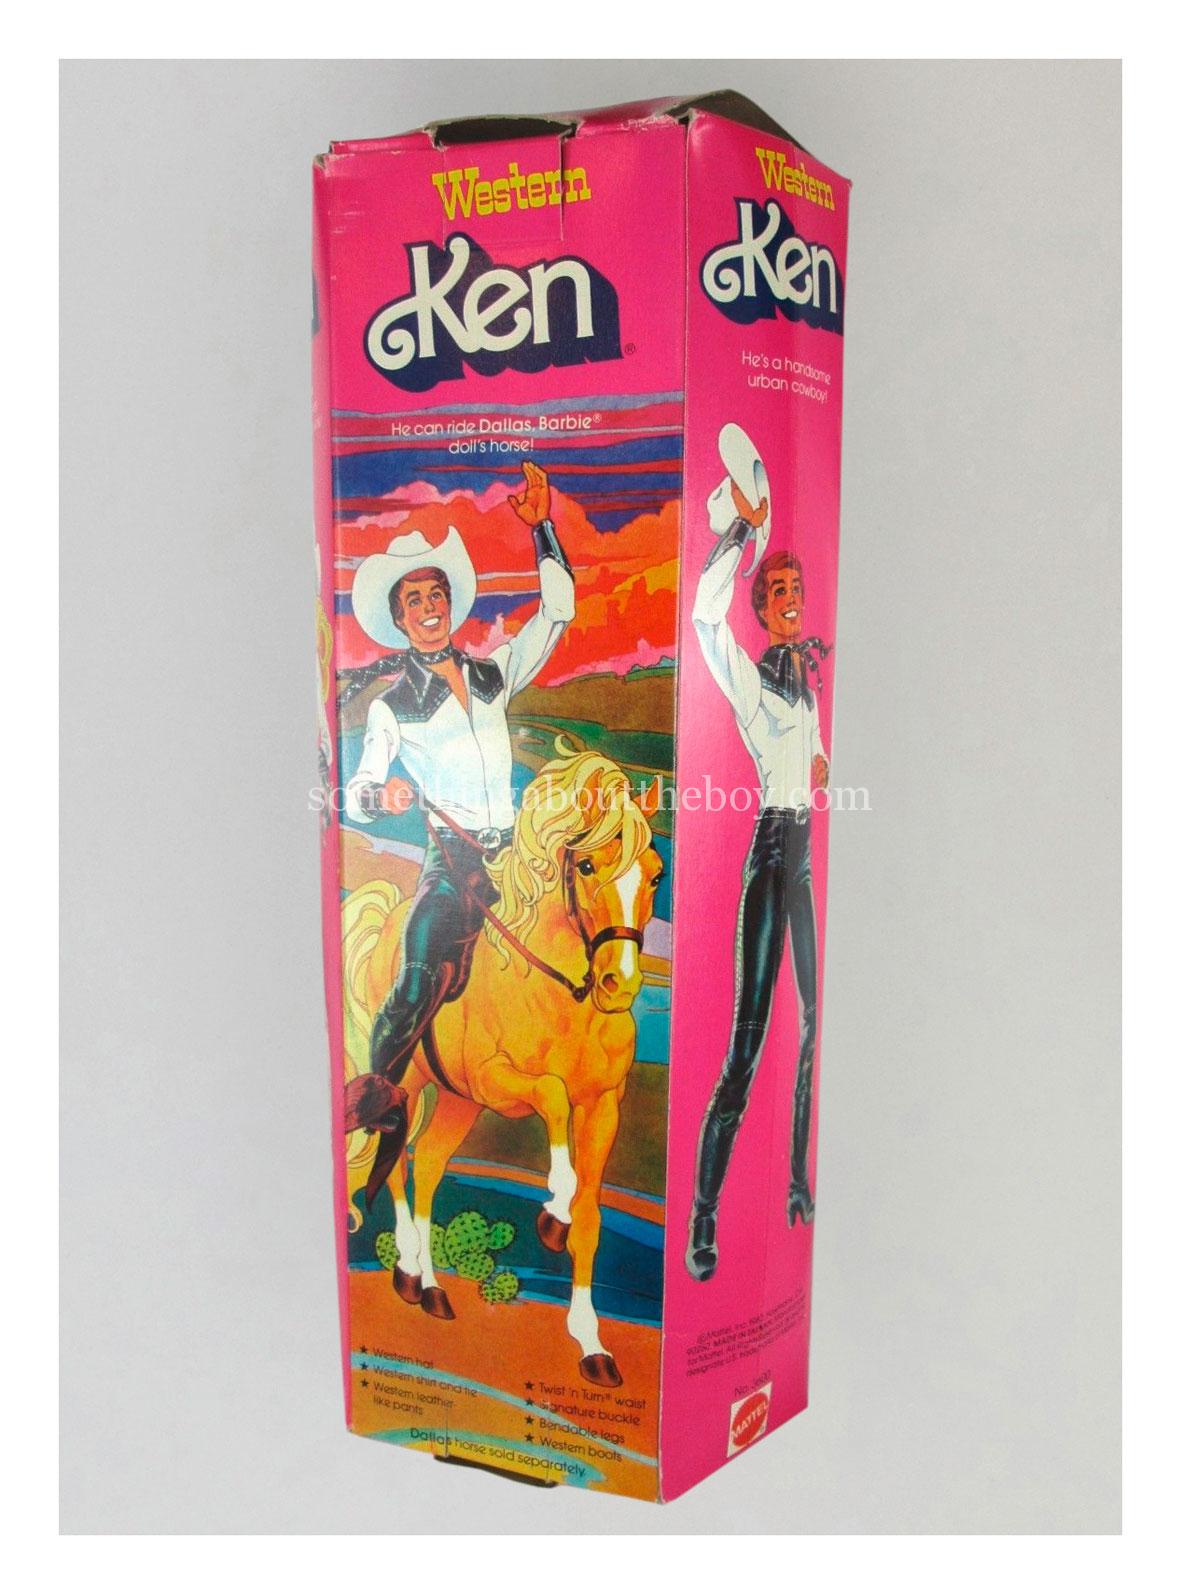 1981 #3600 Western Ken original packaging